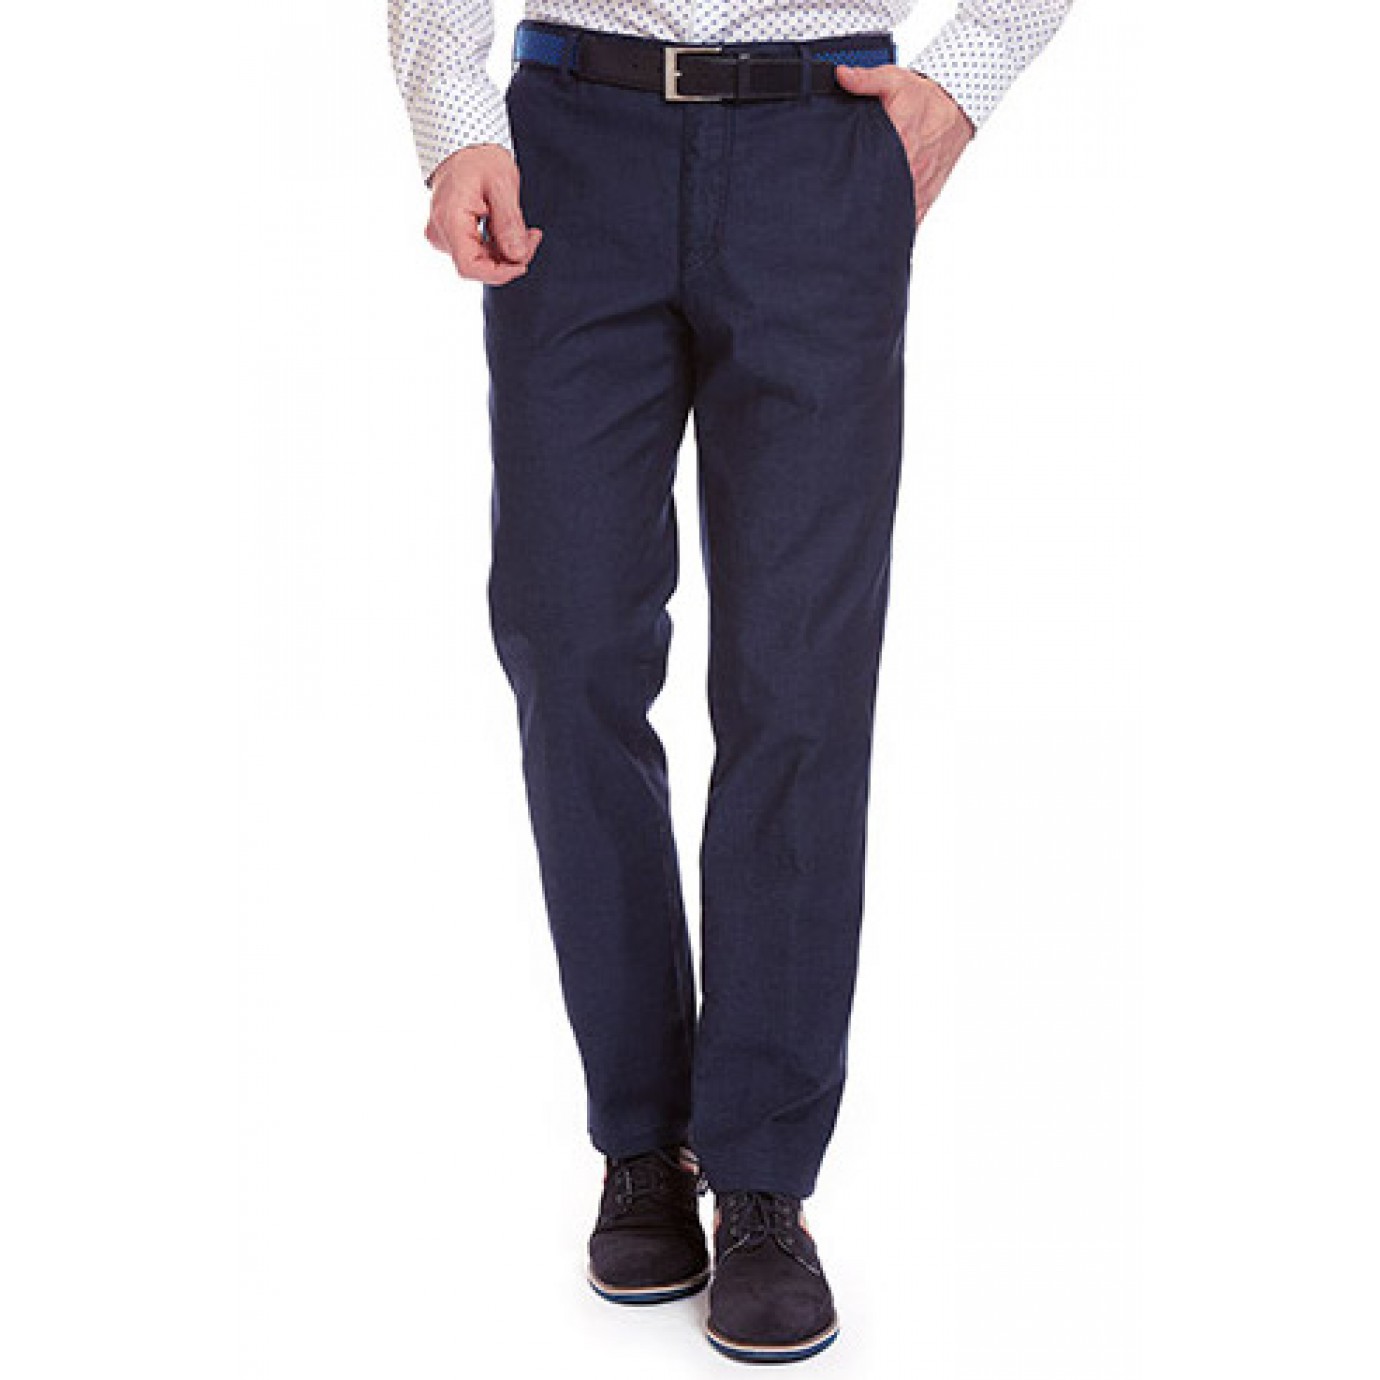 Брюки мужские Meyer Bonn 5-685/20 из легкой летней джинсовой ткани купить вМоскве в интернет-магазине SHOP4BIG - цена, фото, описание